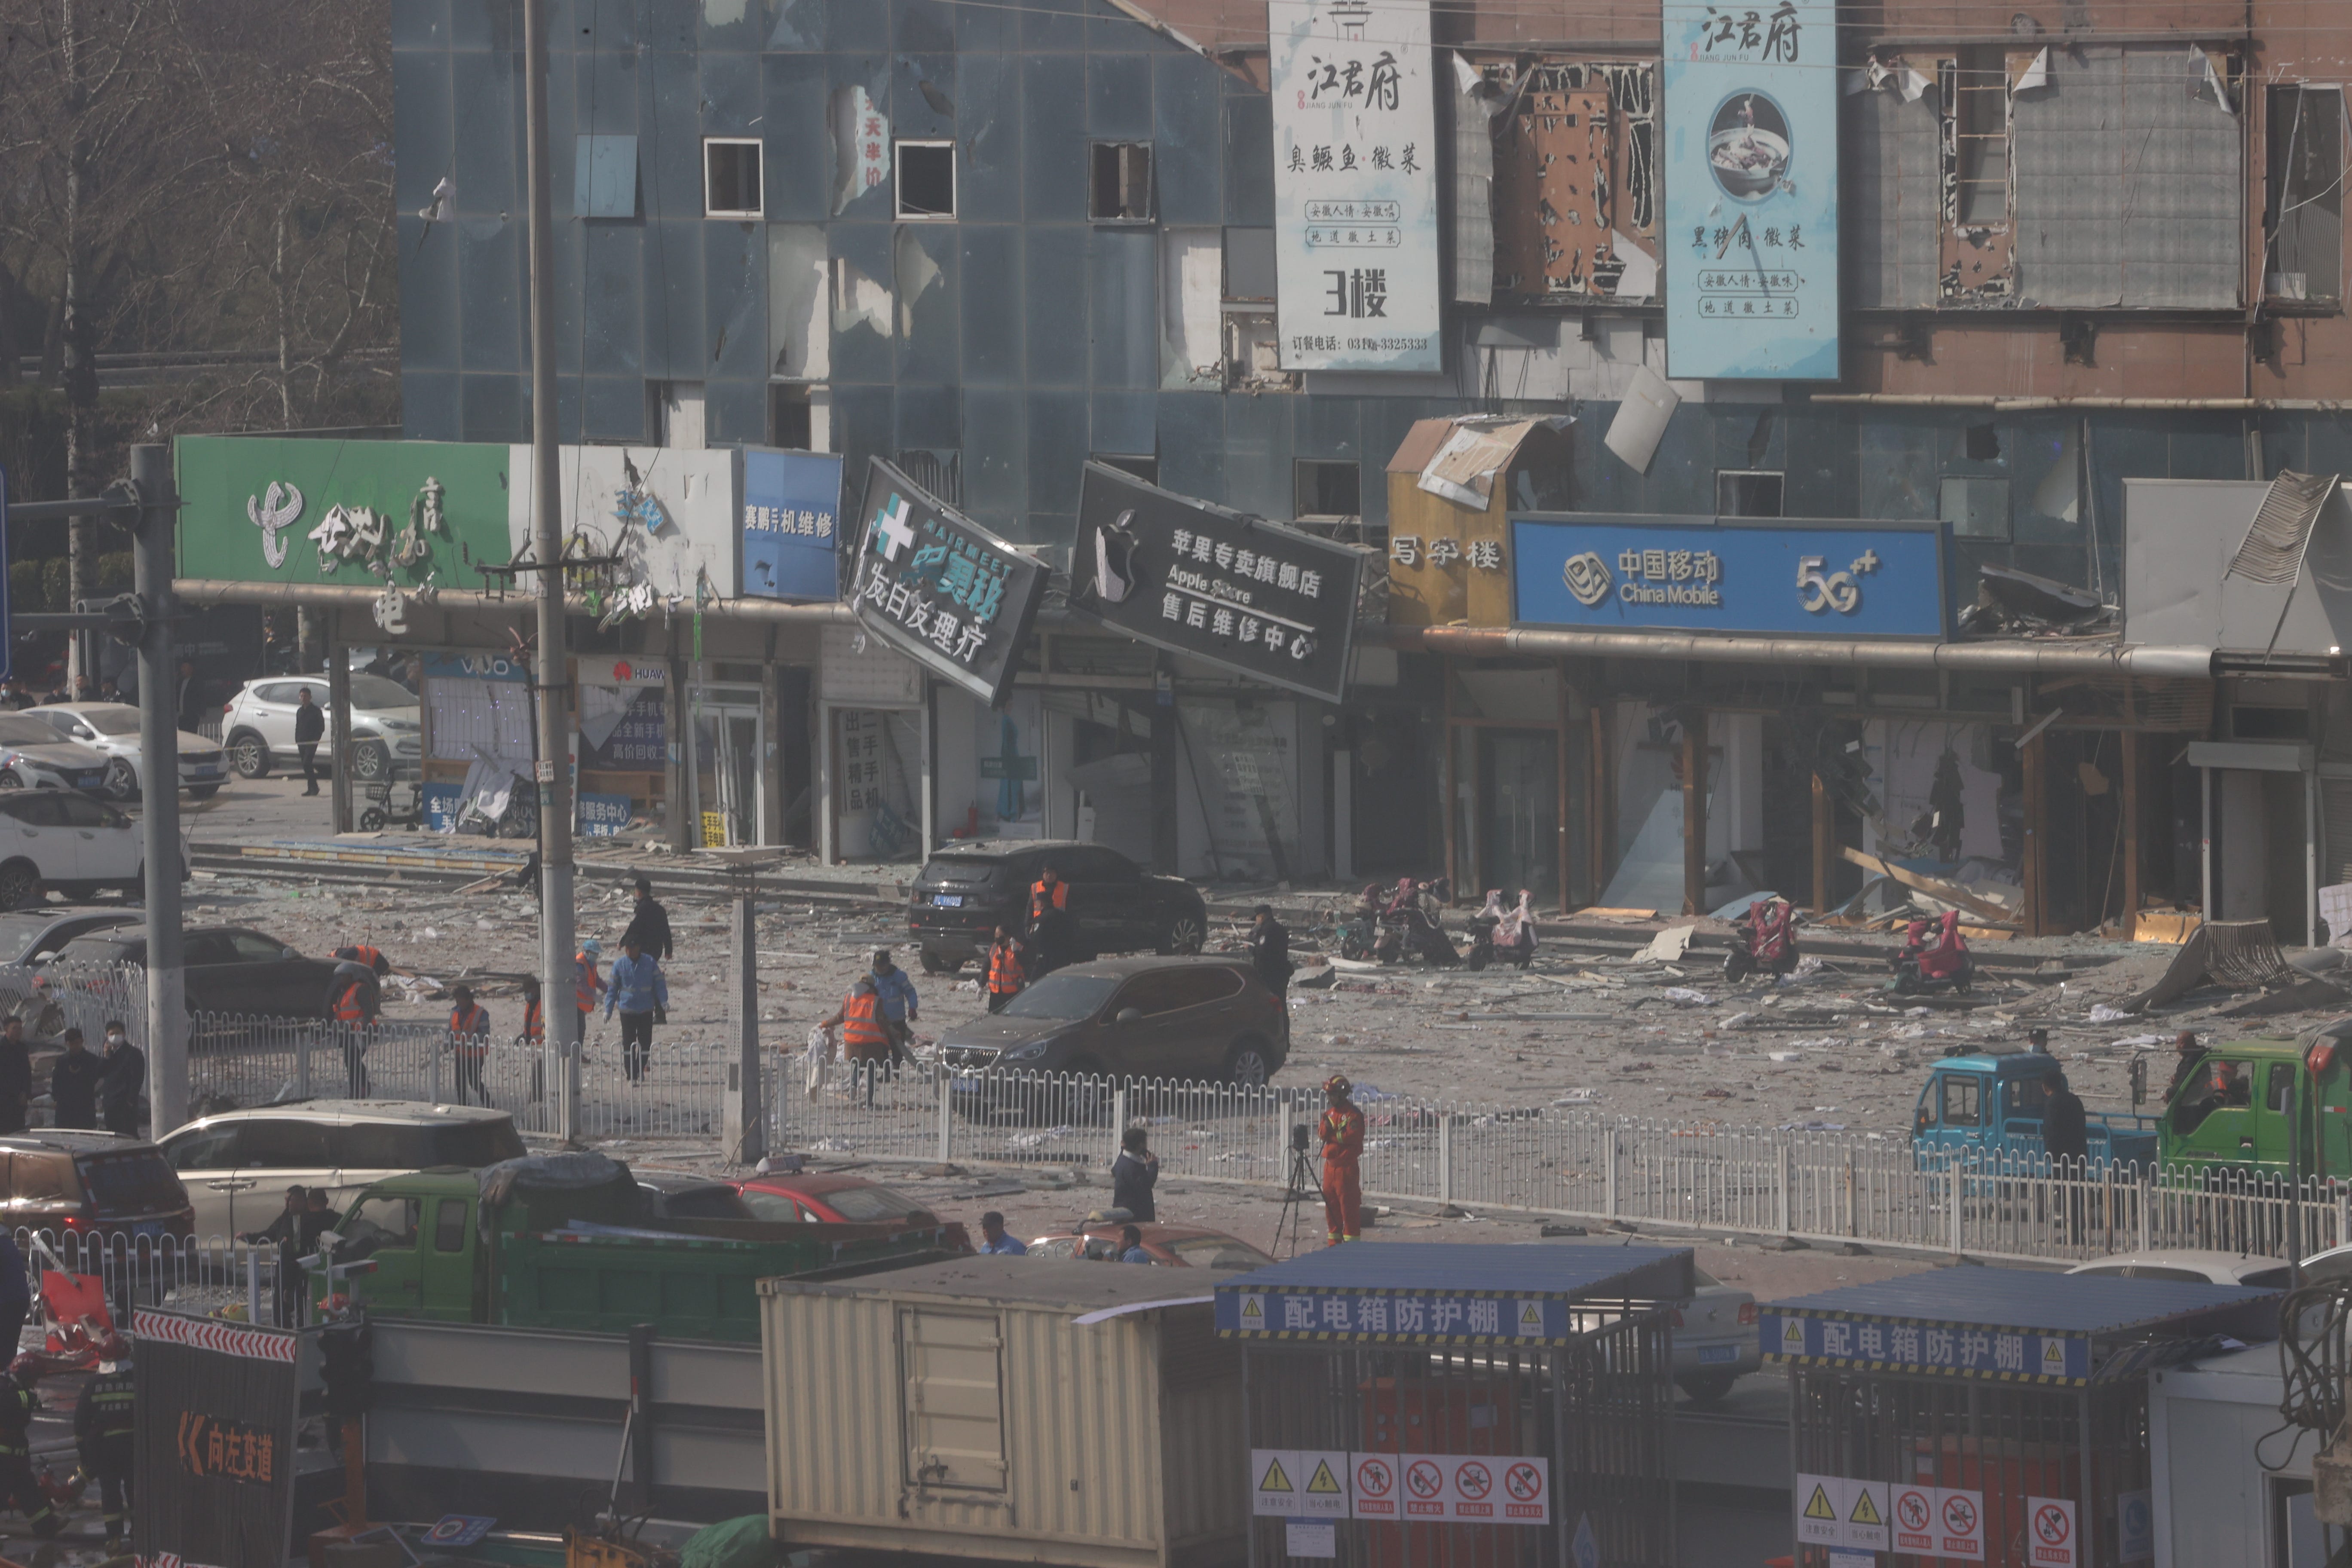 Durch die Explosion am Mittwoch wurden nahegelegene Ladenfronten in Yanjiao beschädigt.